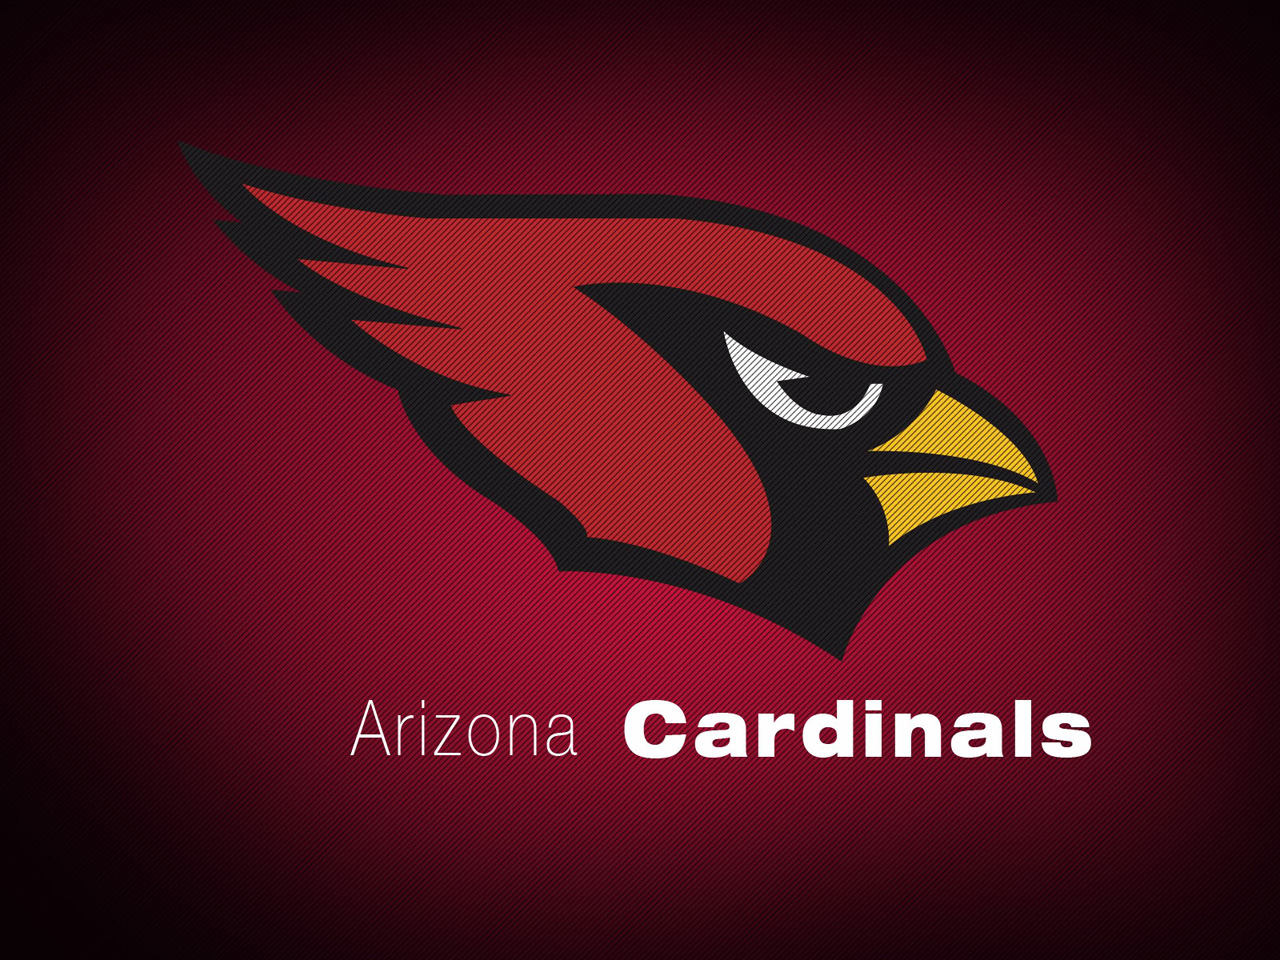 Arizona Cardinals Wallpaper Collection